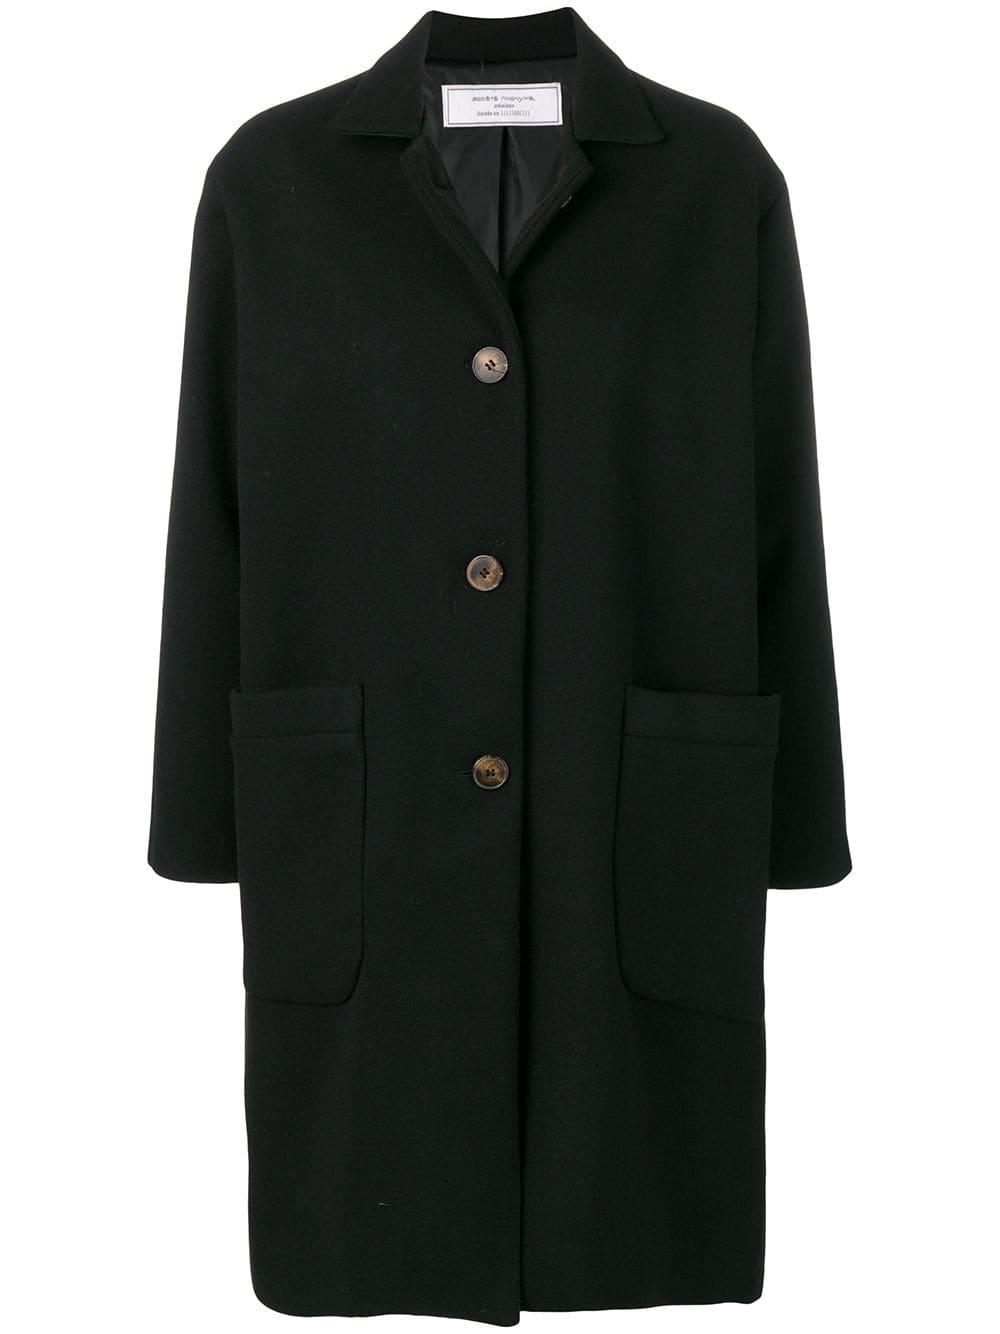 Societe Anonyme Wool Jap Coat in Black - Lyst